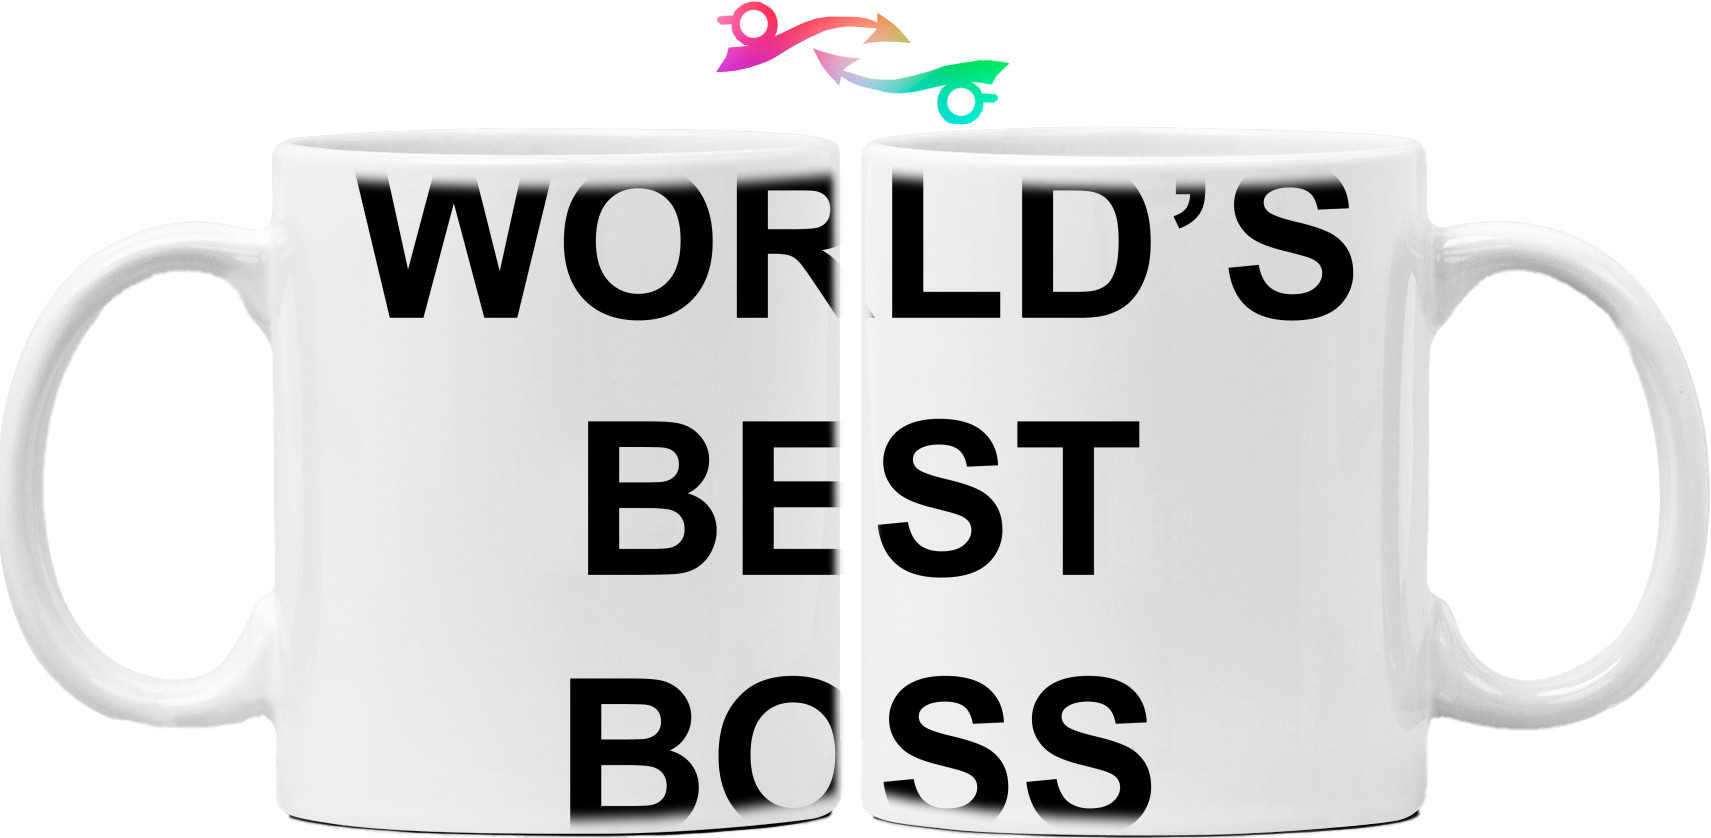 Worlds best boss